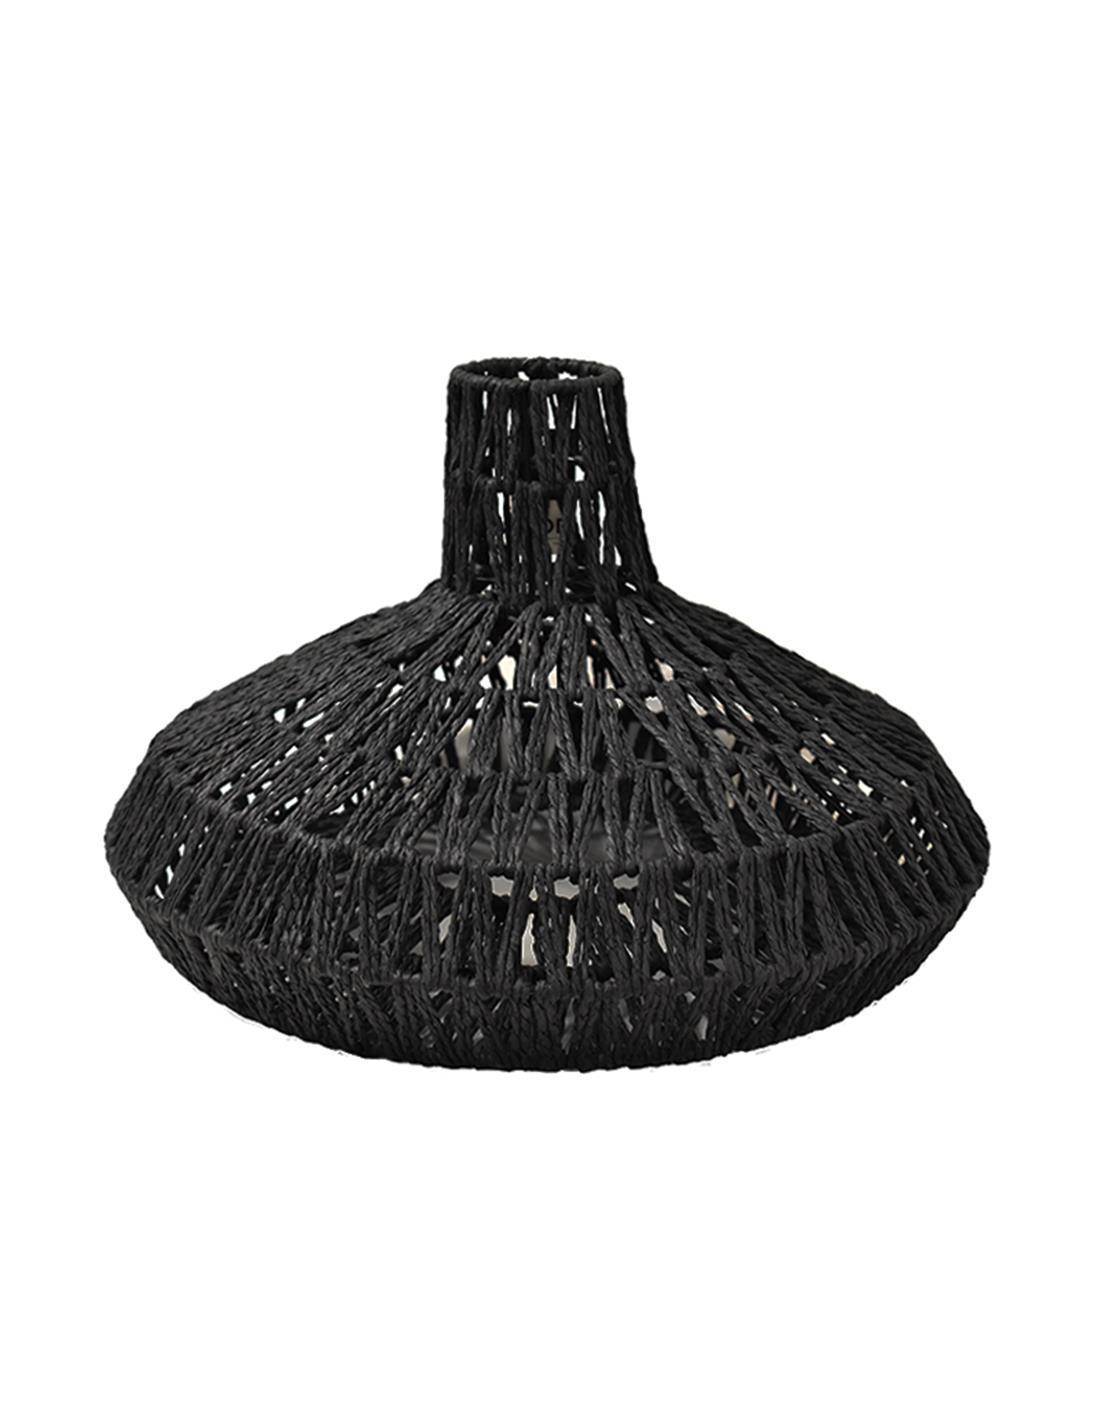 Φωτιστικό καπέλο οροφής τεχνητή raffia μαύρο χρώμα  45Χ30